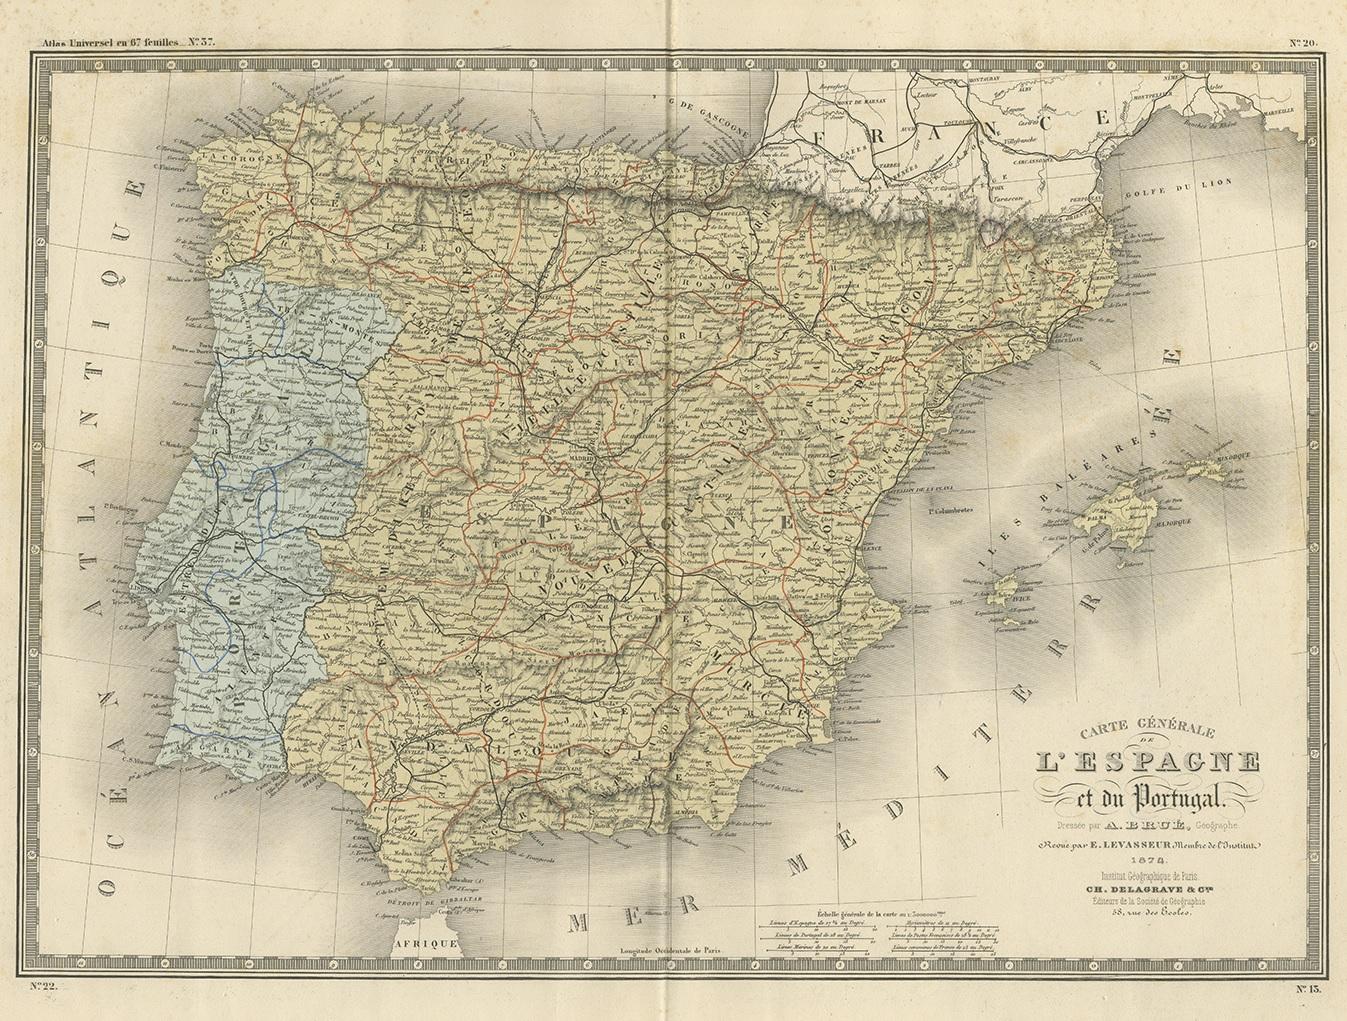 Antique map titled 'Carte générale de l'Espagne et du Portugal (..)'. Large map of Spain and Portugal. This map originates from 'Atlas de Géographie Moderne Physique et Politique' by A. Levasseur. Published, 1875.